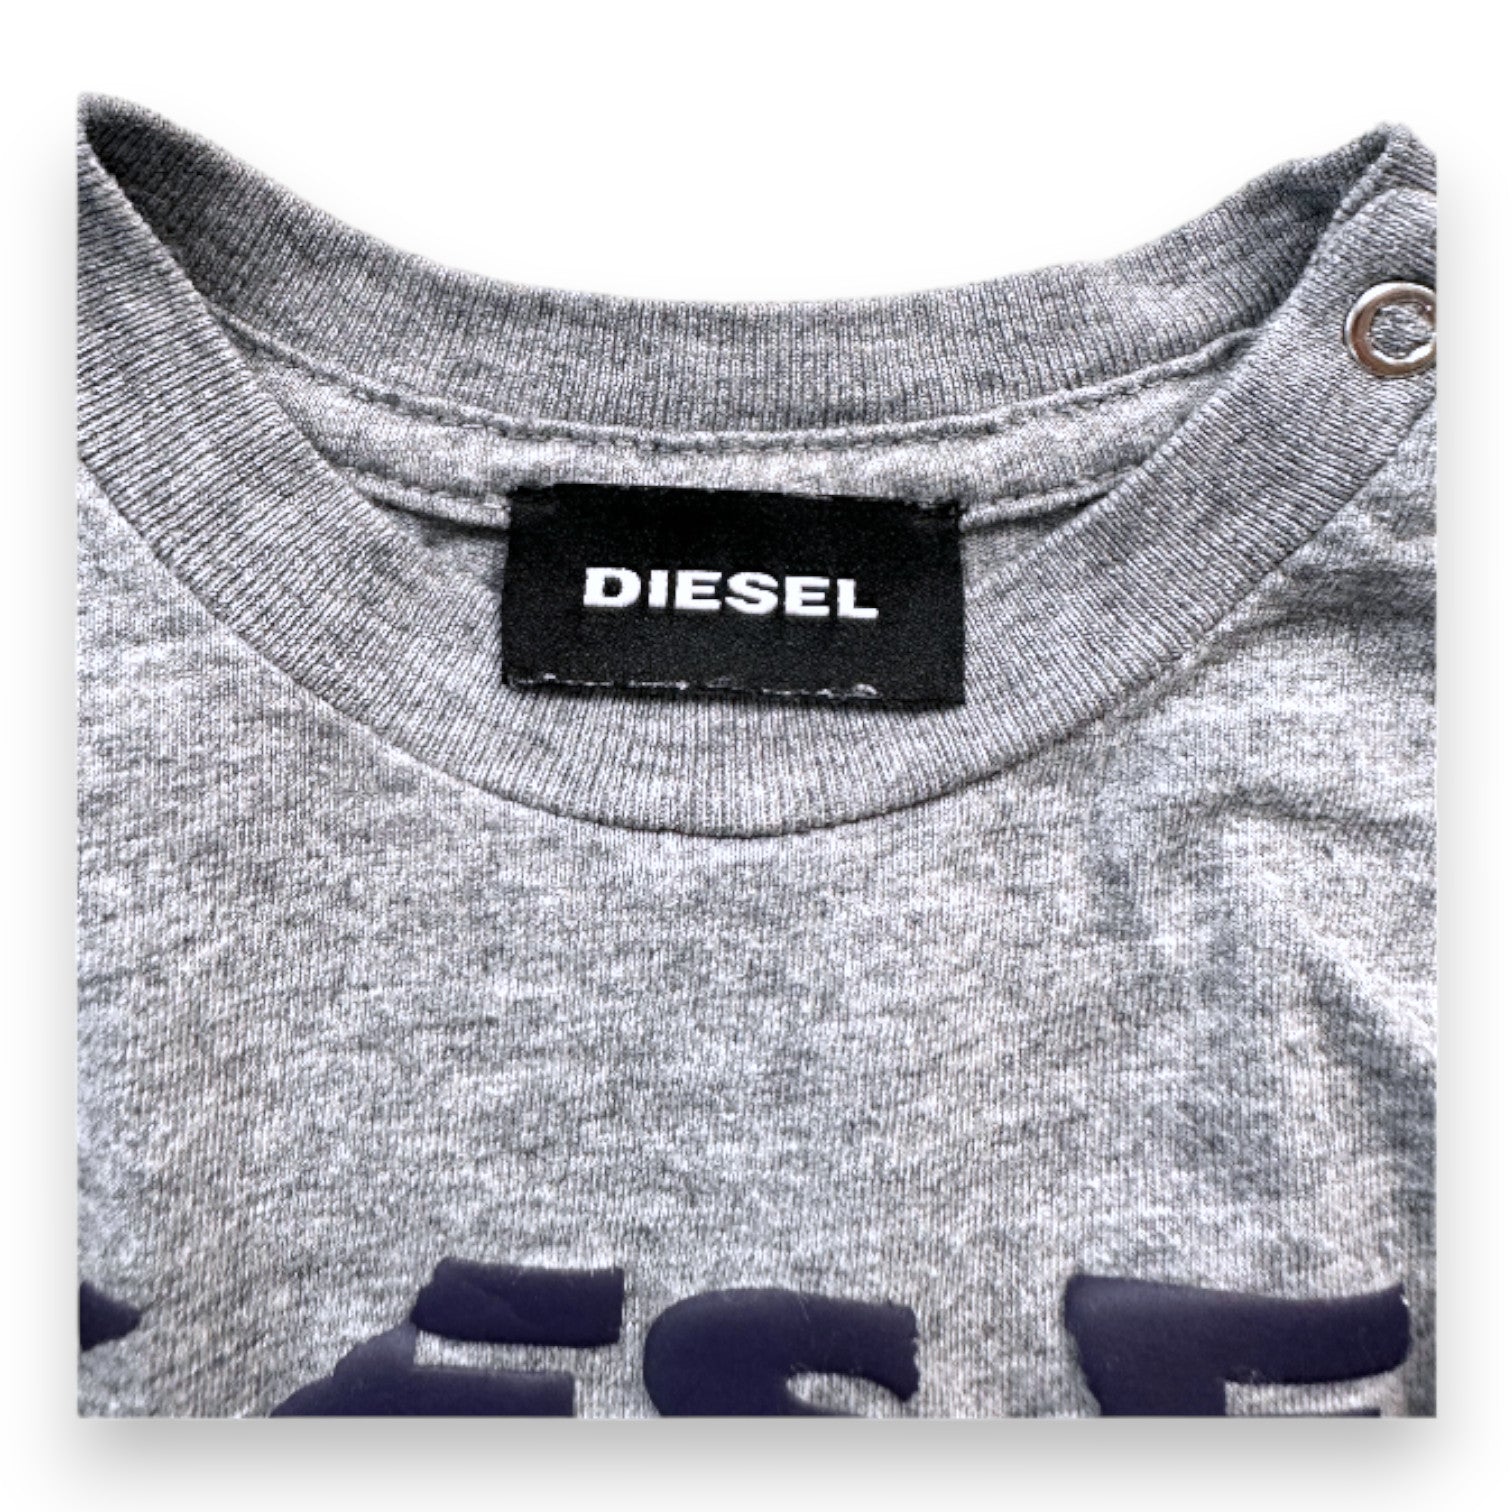 DIESEL - T-shirt à manches longues gris avec imprimés - 3 mois